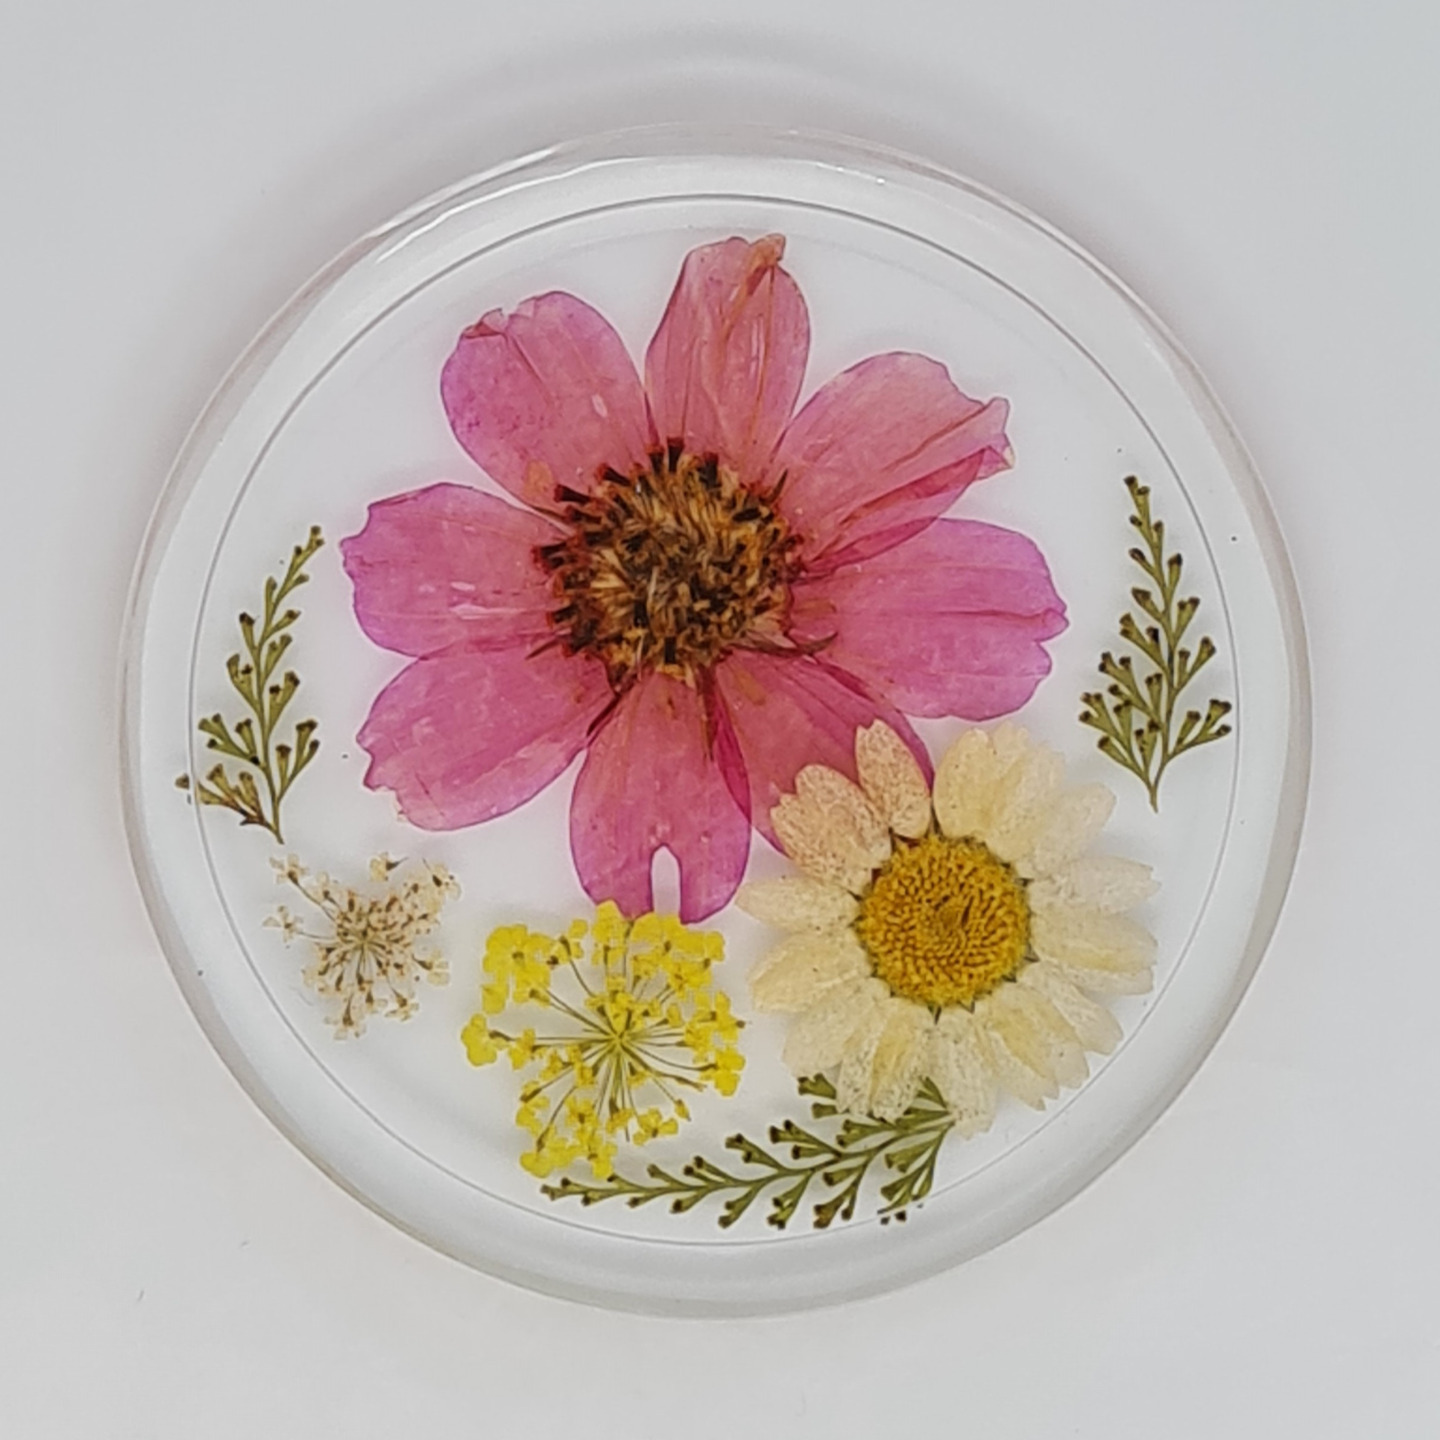 Bloom8 rim| Real Pressed Flowers resin coaster| Handmade 